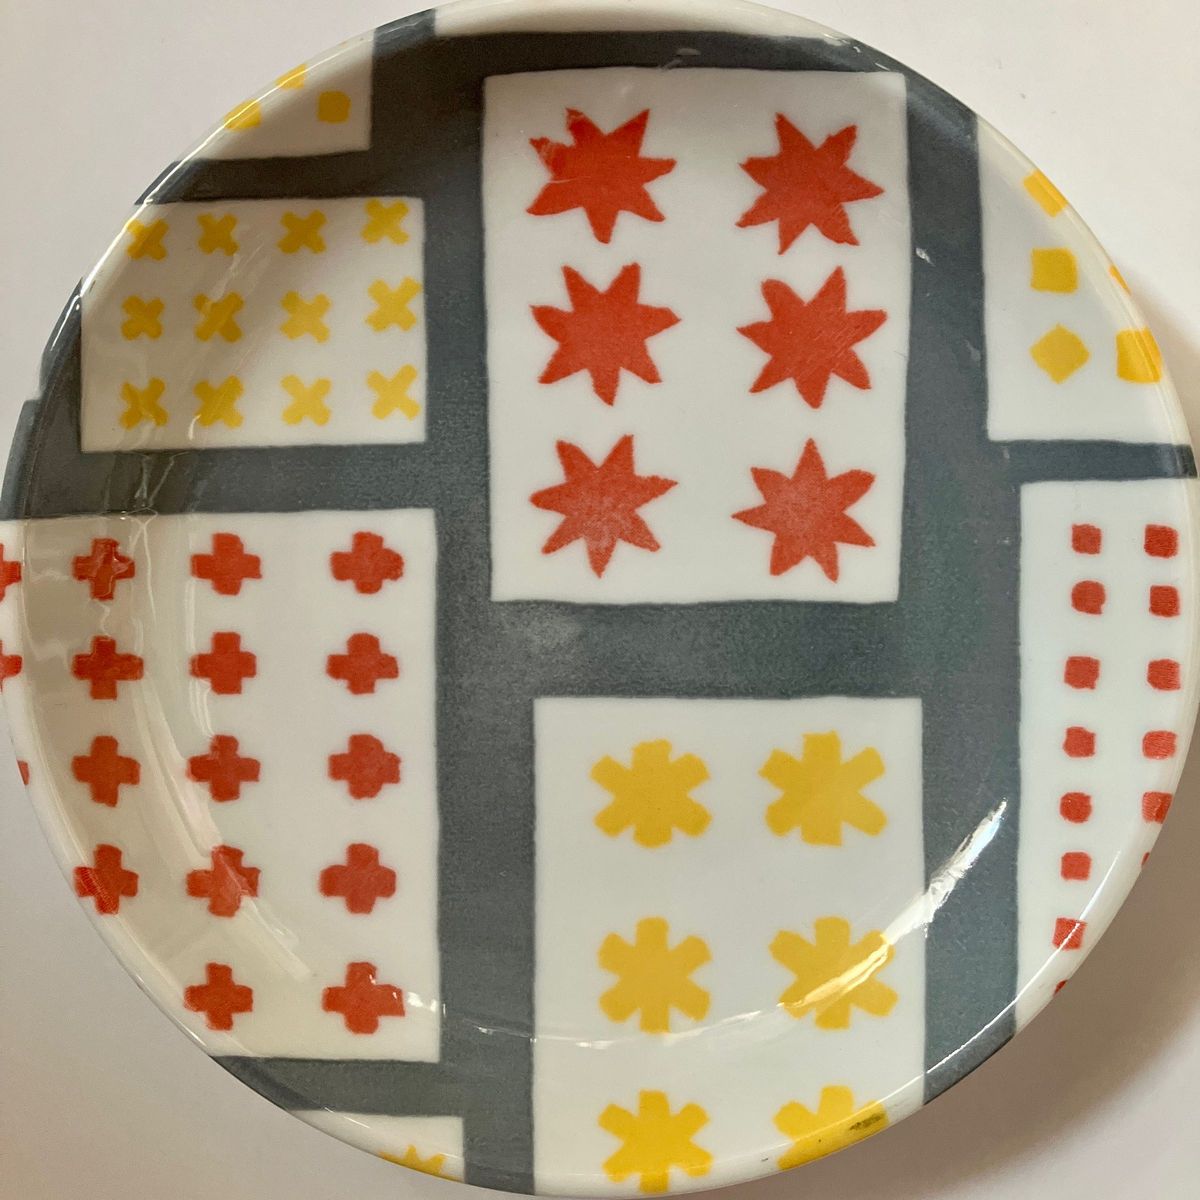 新品未使用 10枚セット SOU・SOU ソウソウ 陶器の皿 絵柄3種 3色 数字 水色 黄色 白色 ツヤがありキレイです